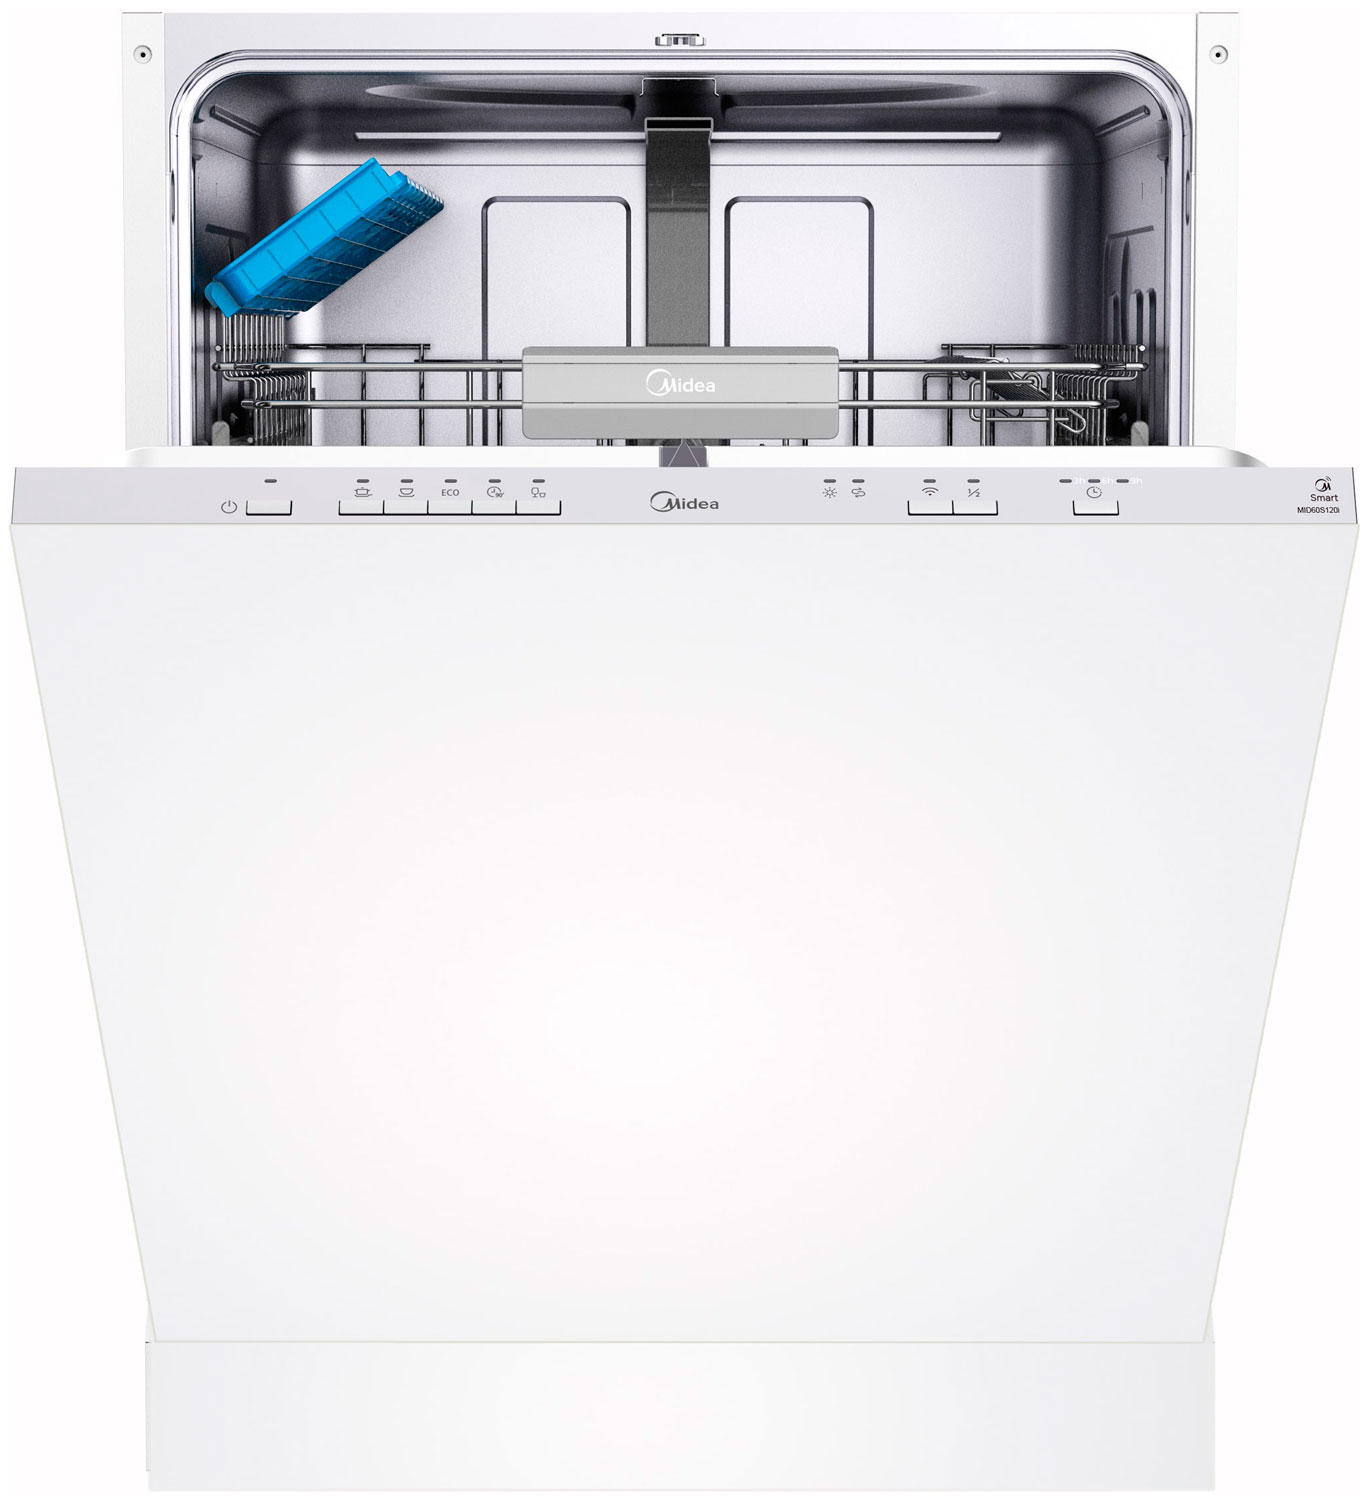 Встраиваемая посудомоечная машина Midea MID60S120i встраиваемая посудомоечная машина midea mid60s350i